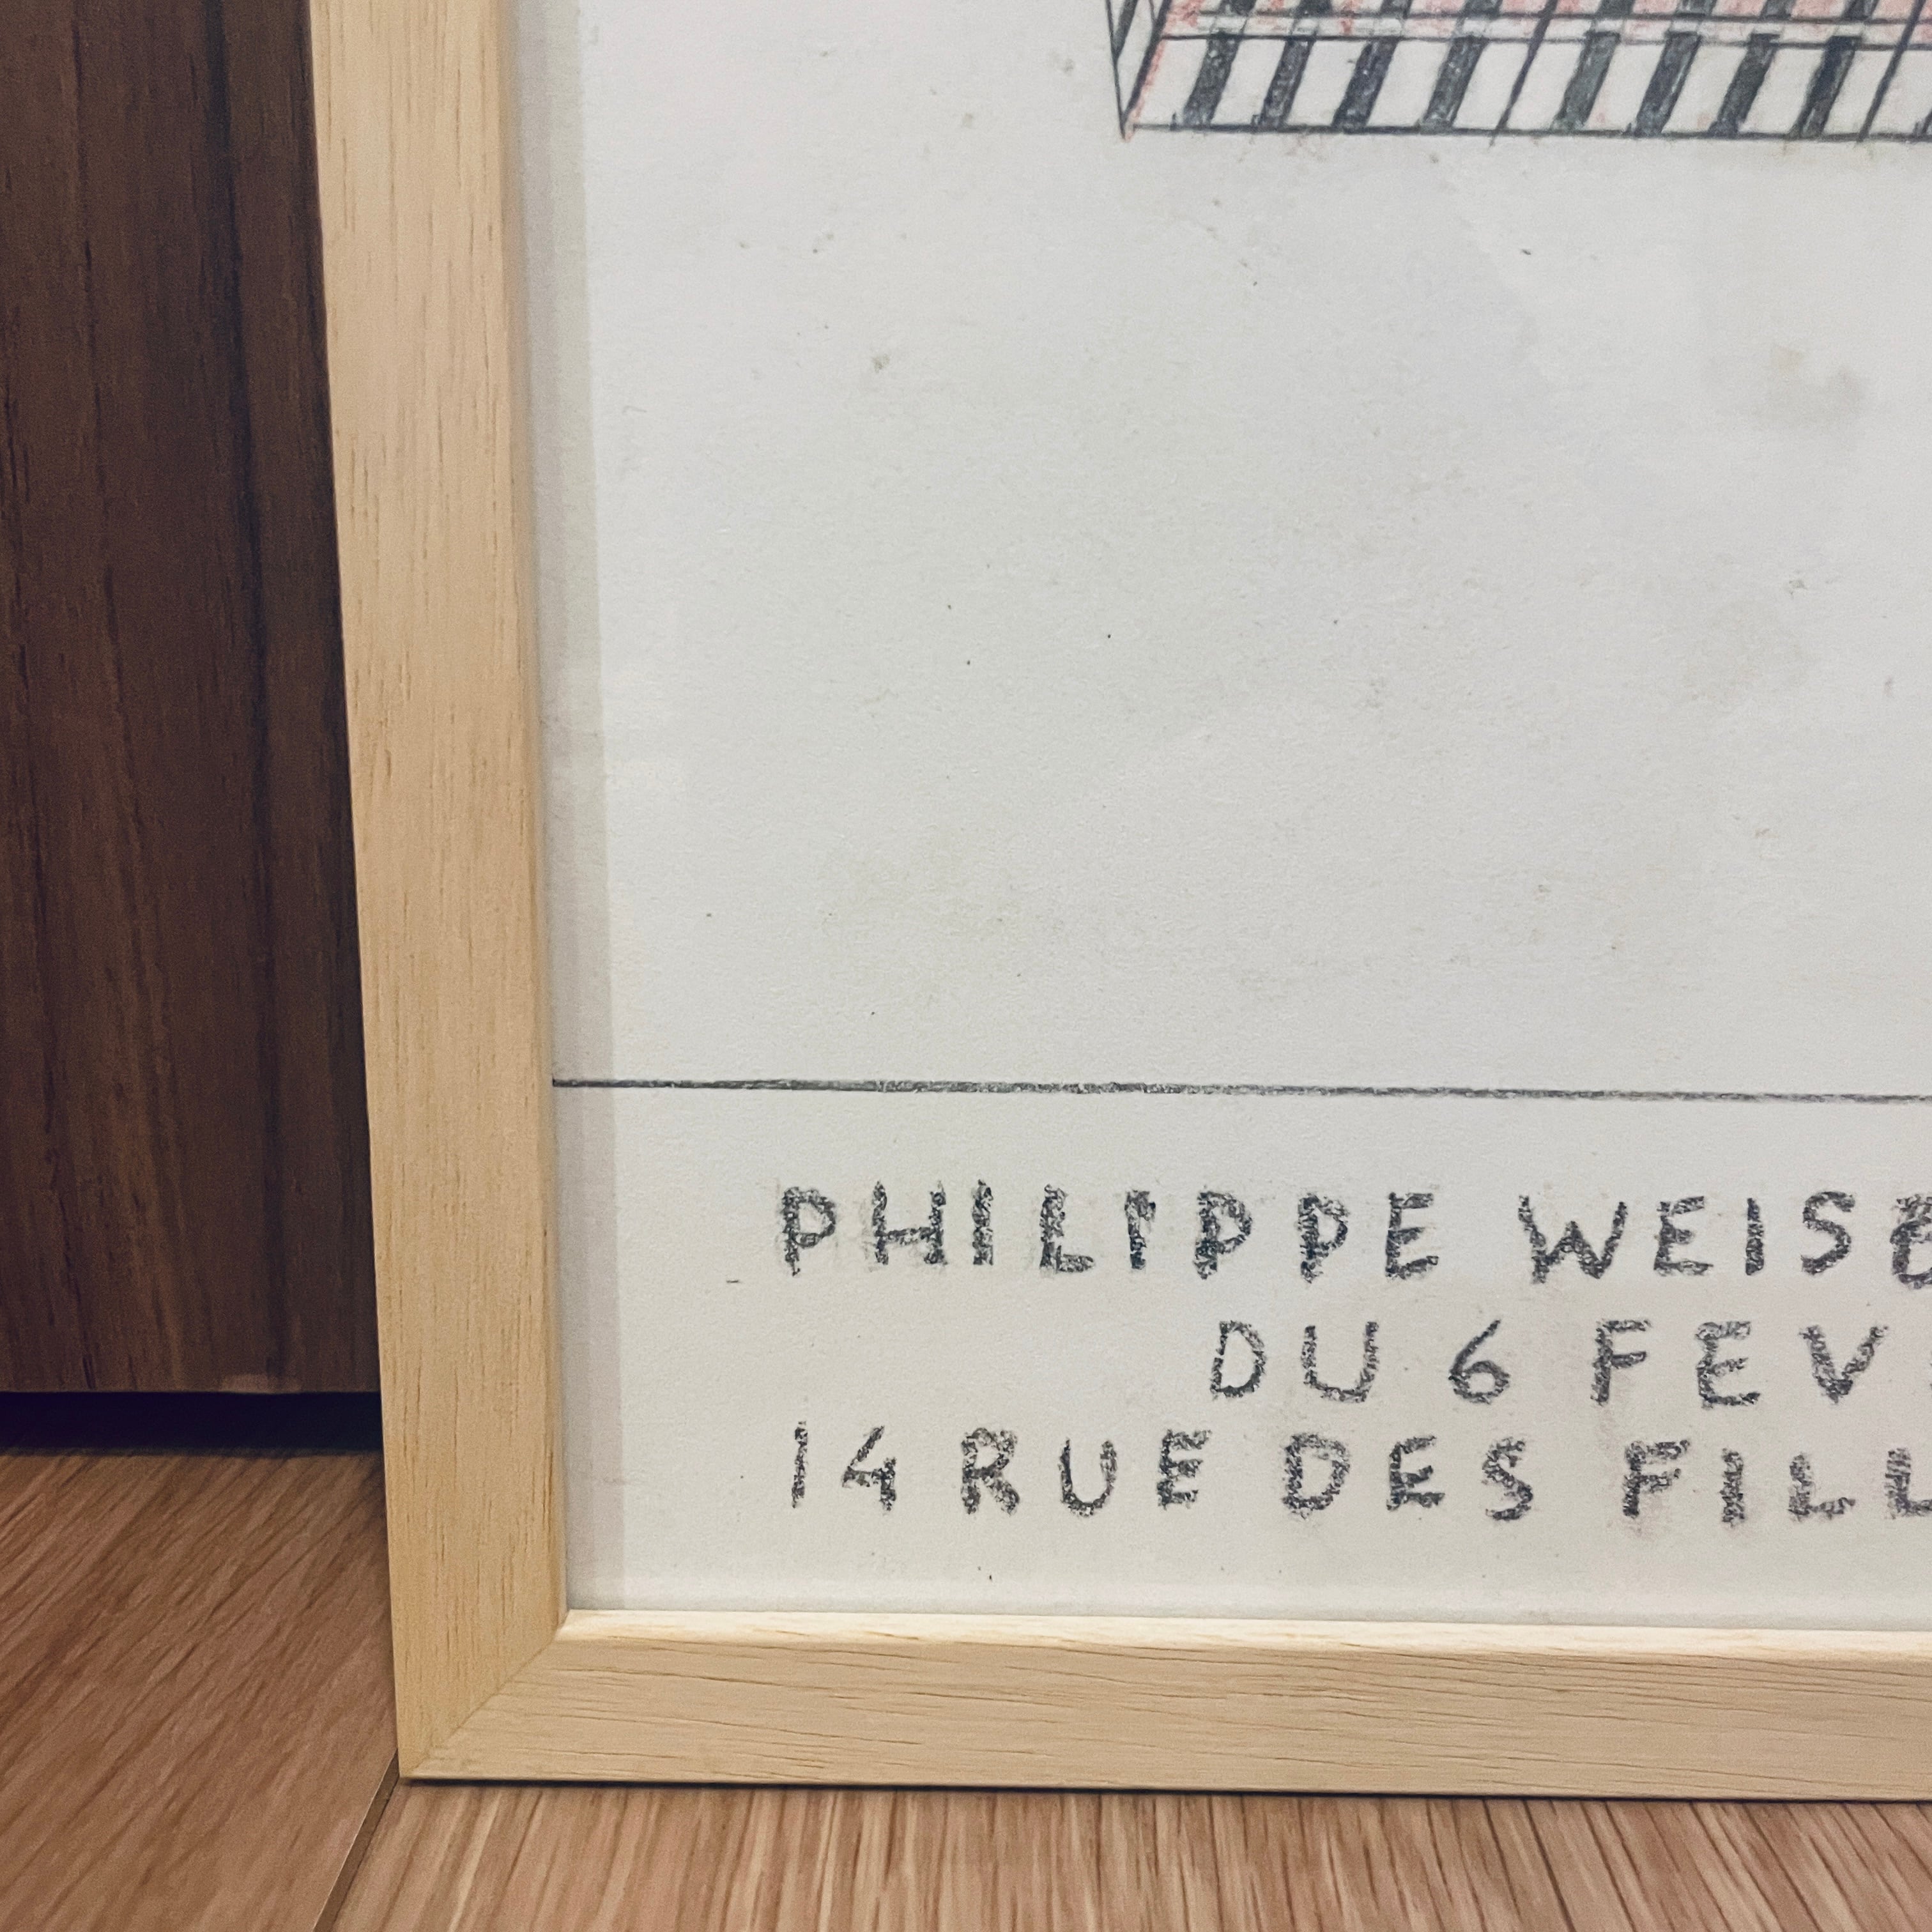 【フランス限定】額装付き『フィリップ・ワイズベッカー』展示2020希少ポスターart